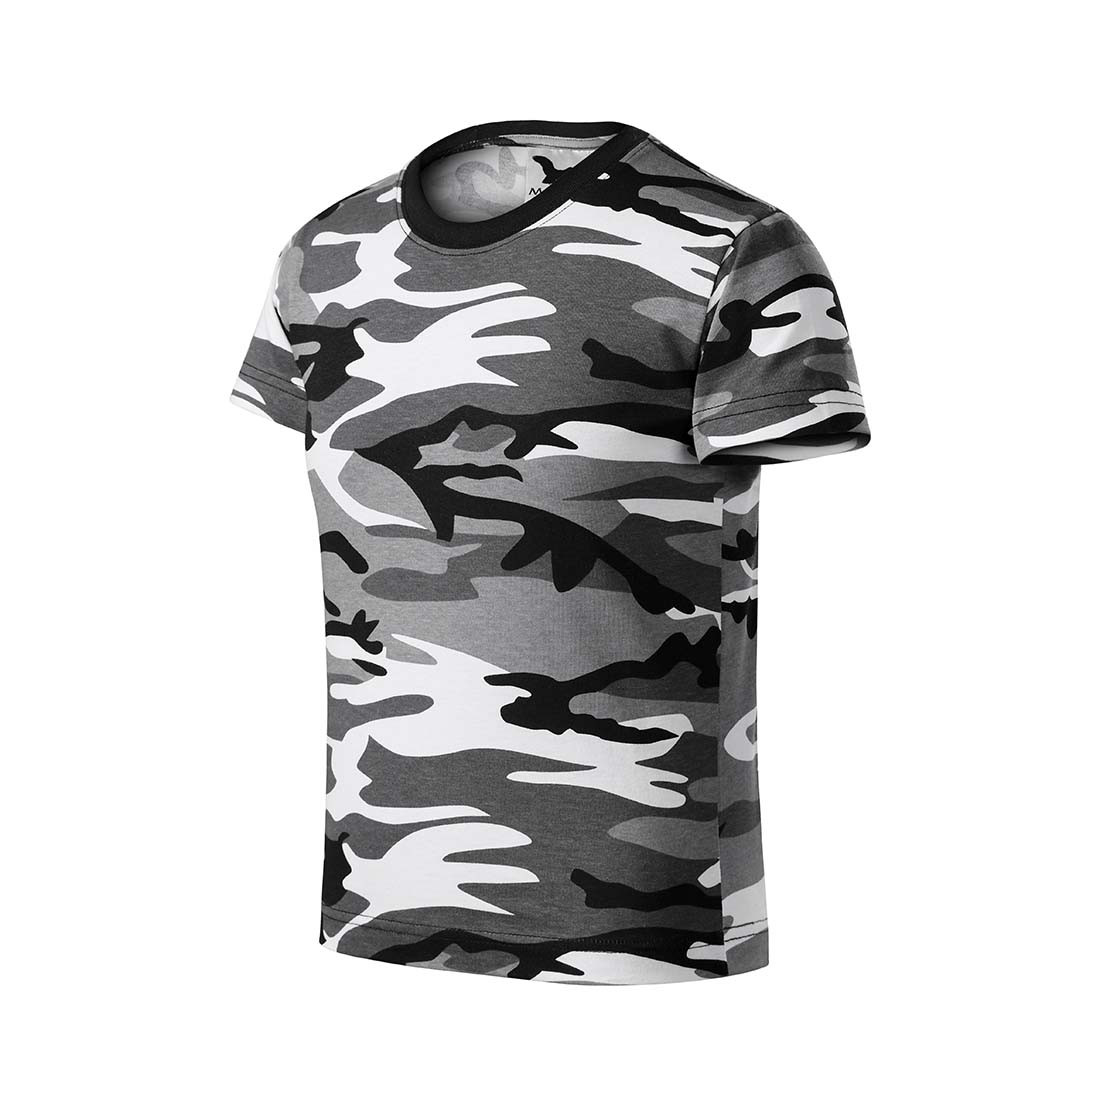 T-shirt camouflage pour enfants - Les vêtements de protection